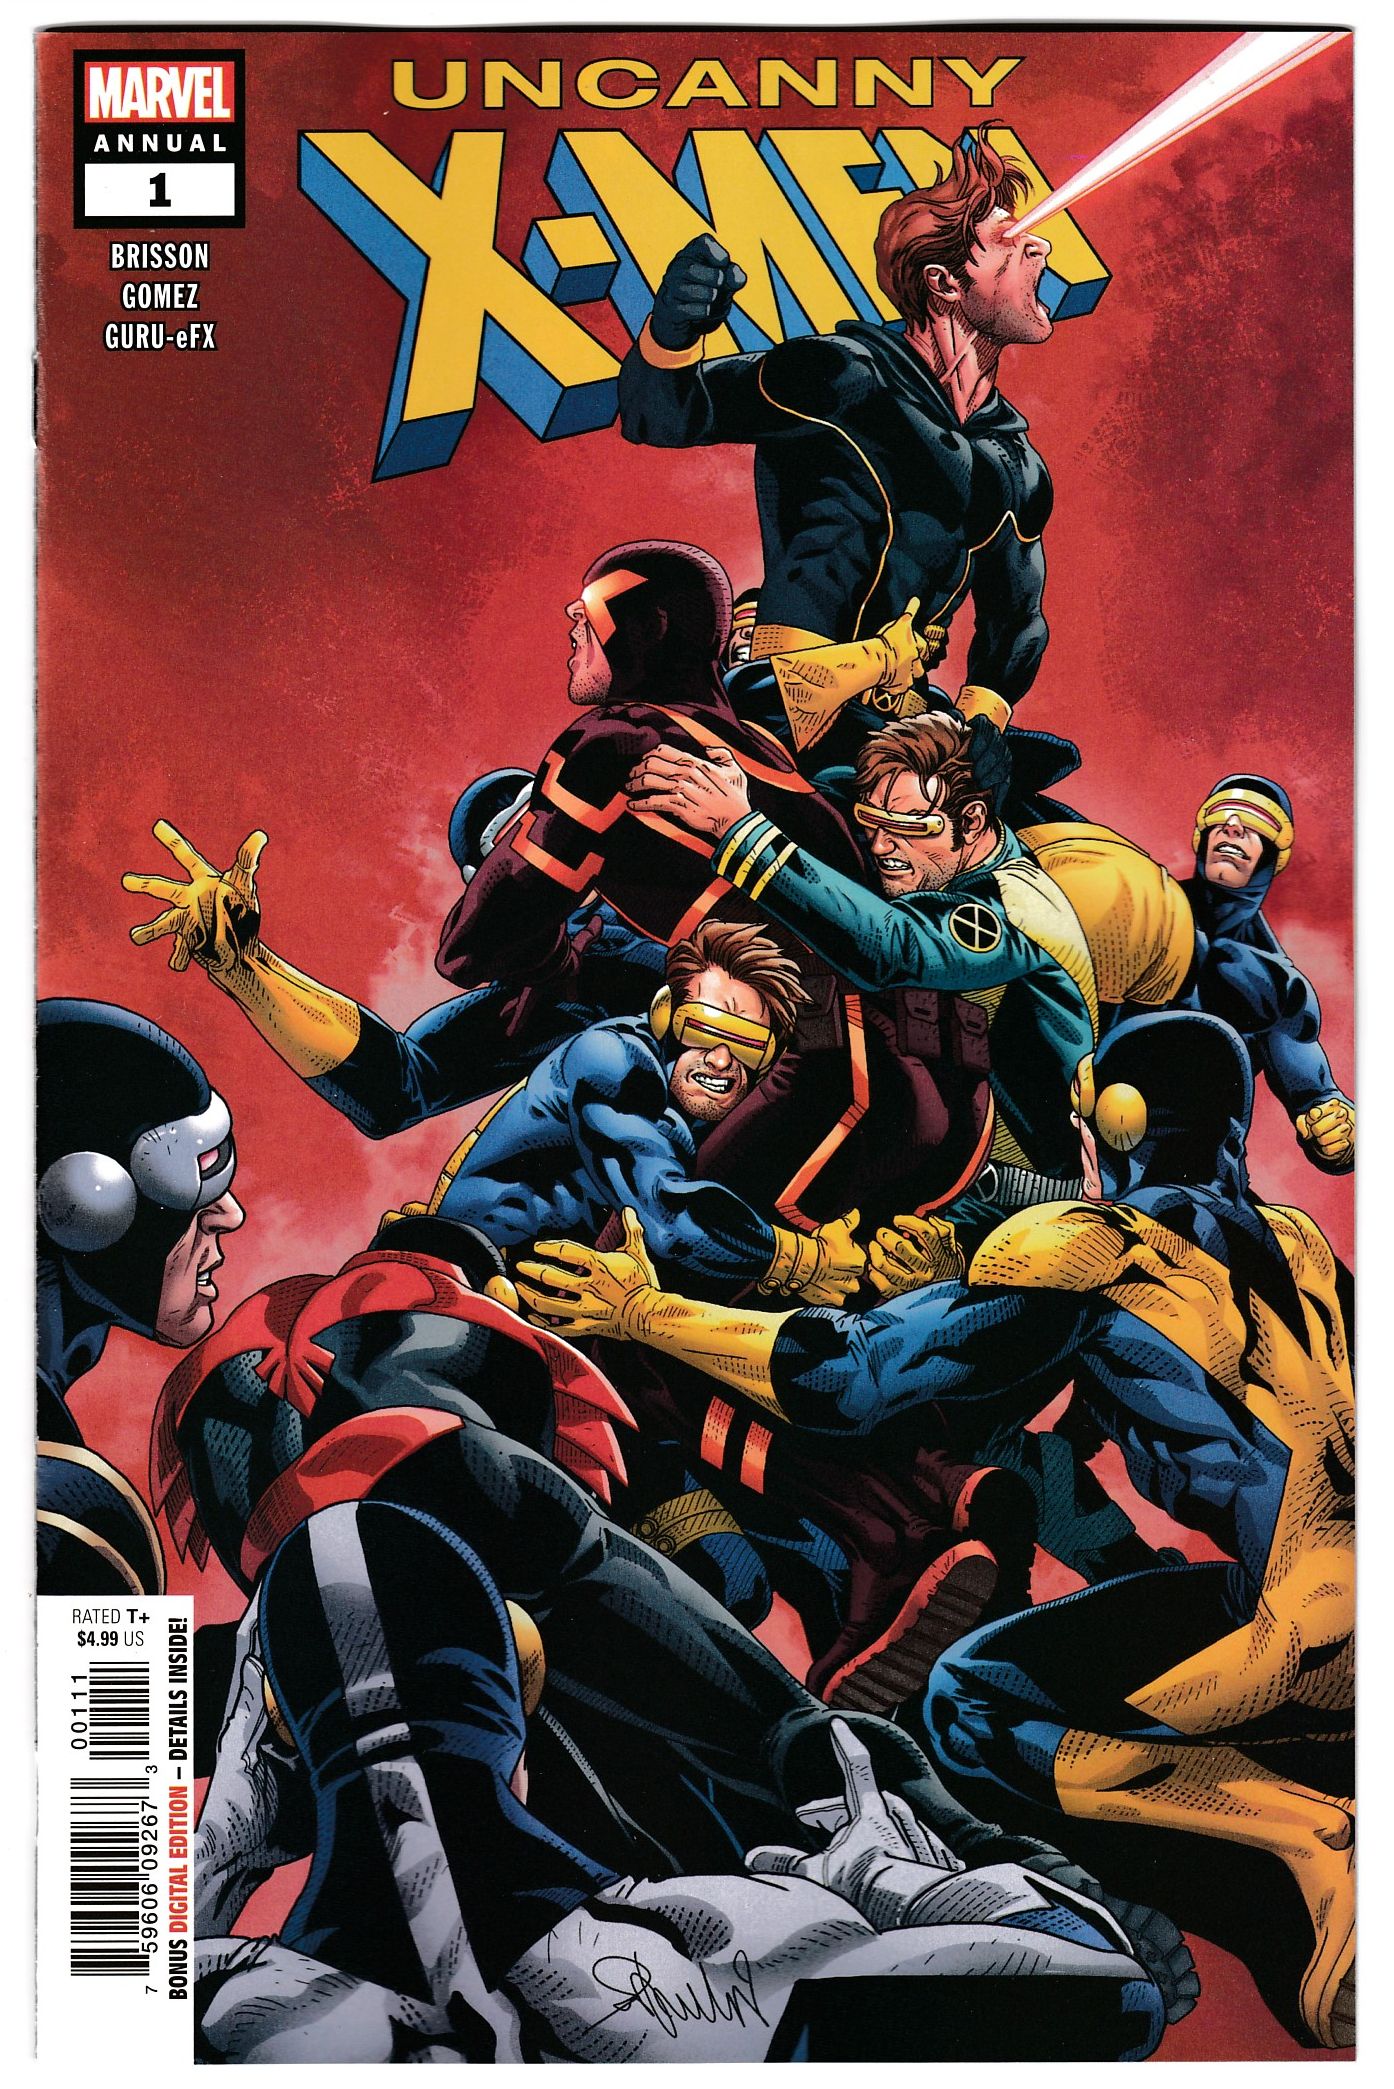 Uncanny X-Men Annual #1  Marvel Comics CB16803 